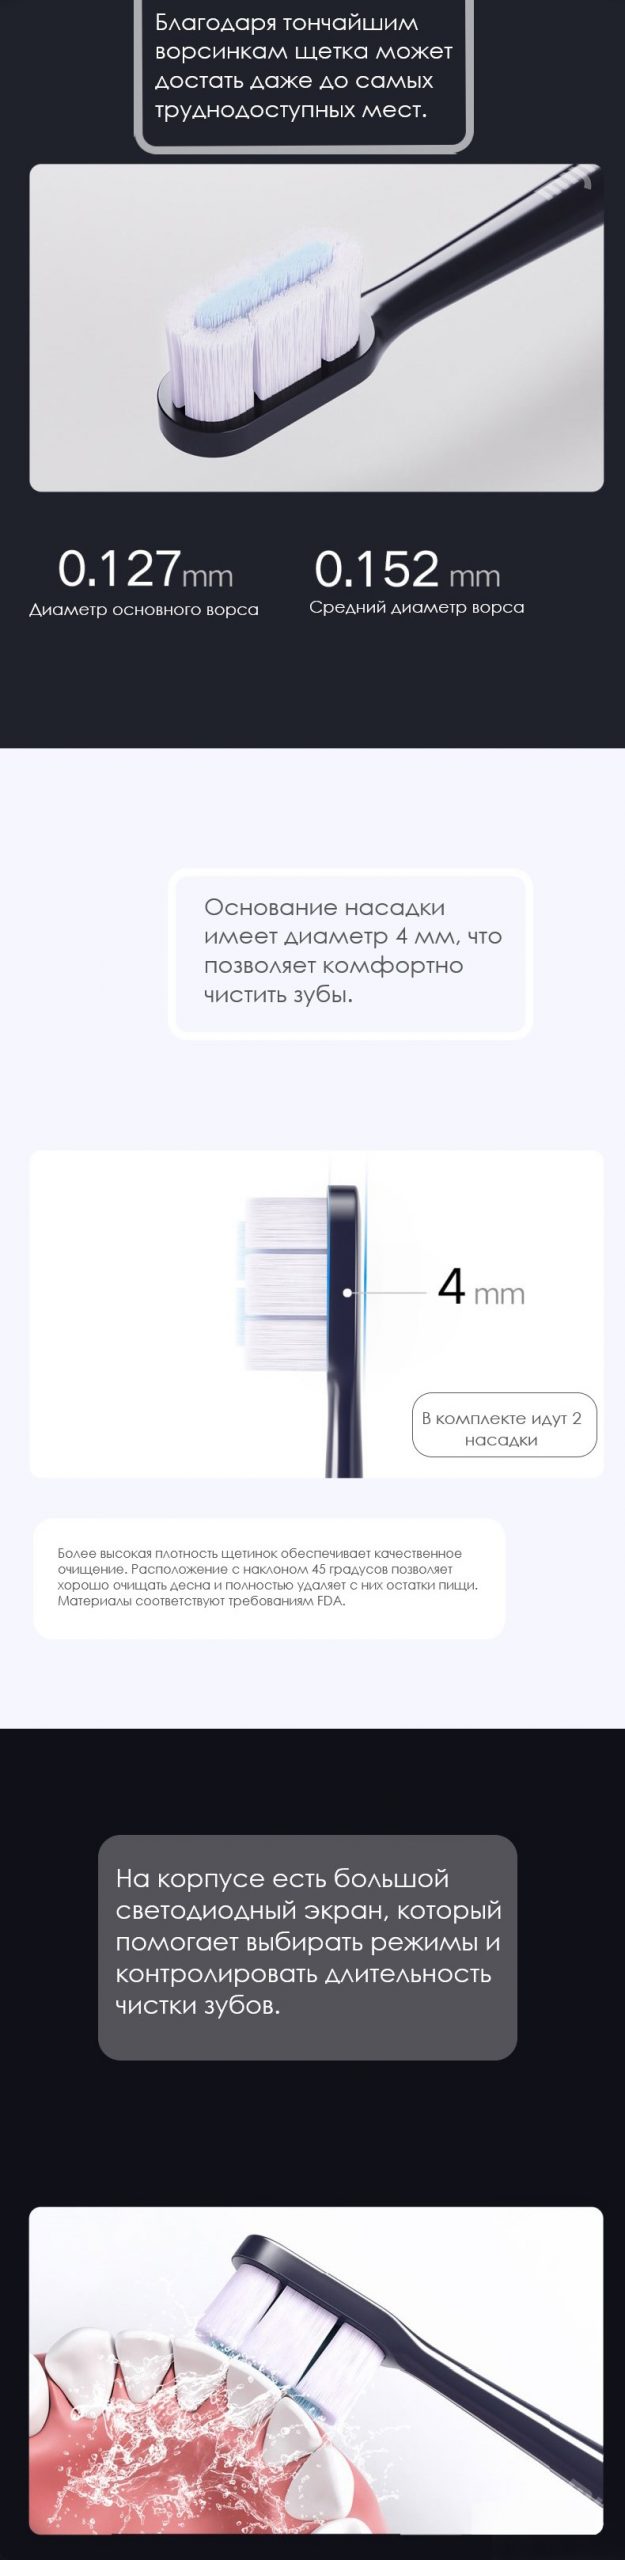 Электрическая зубная щетка Xiaomi Mijia T700 Electric Toothbrush (MES604)